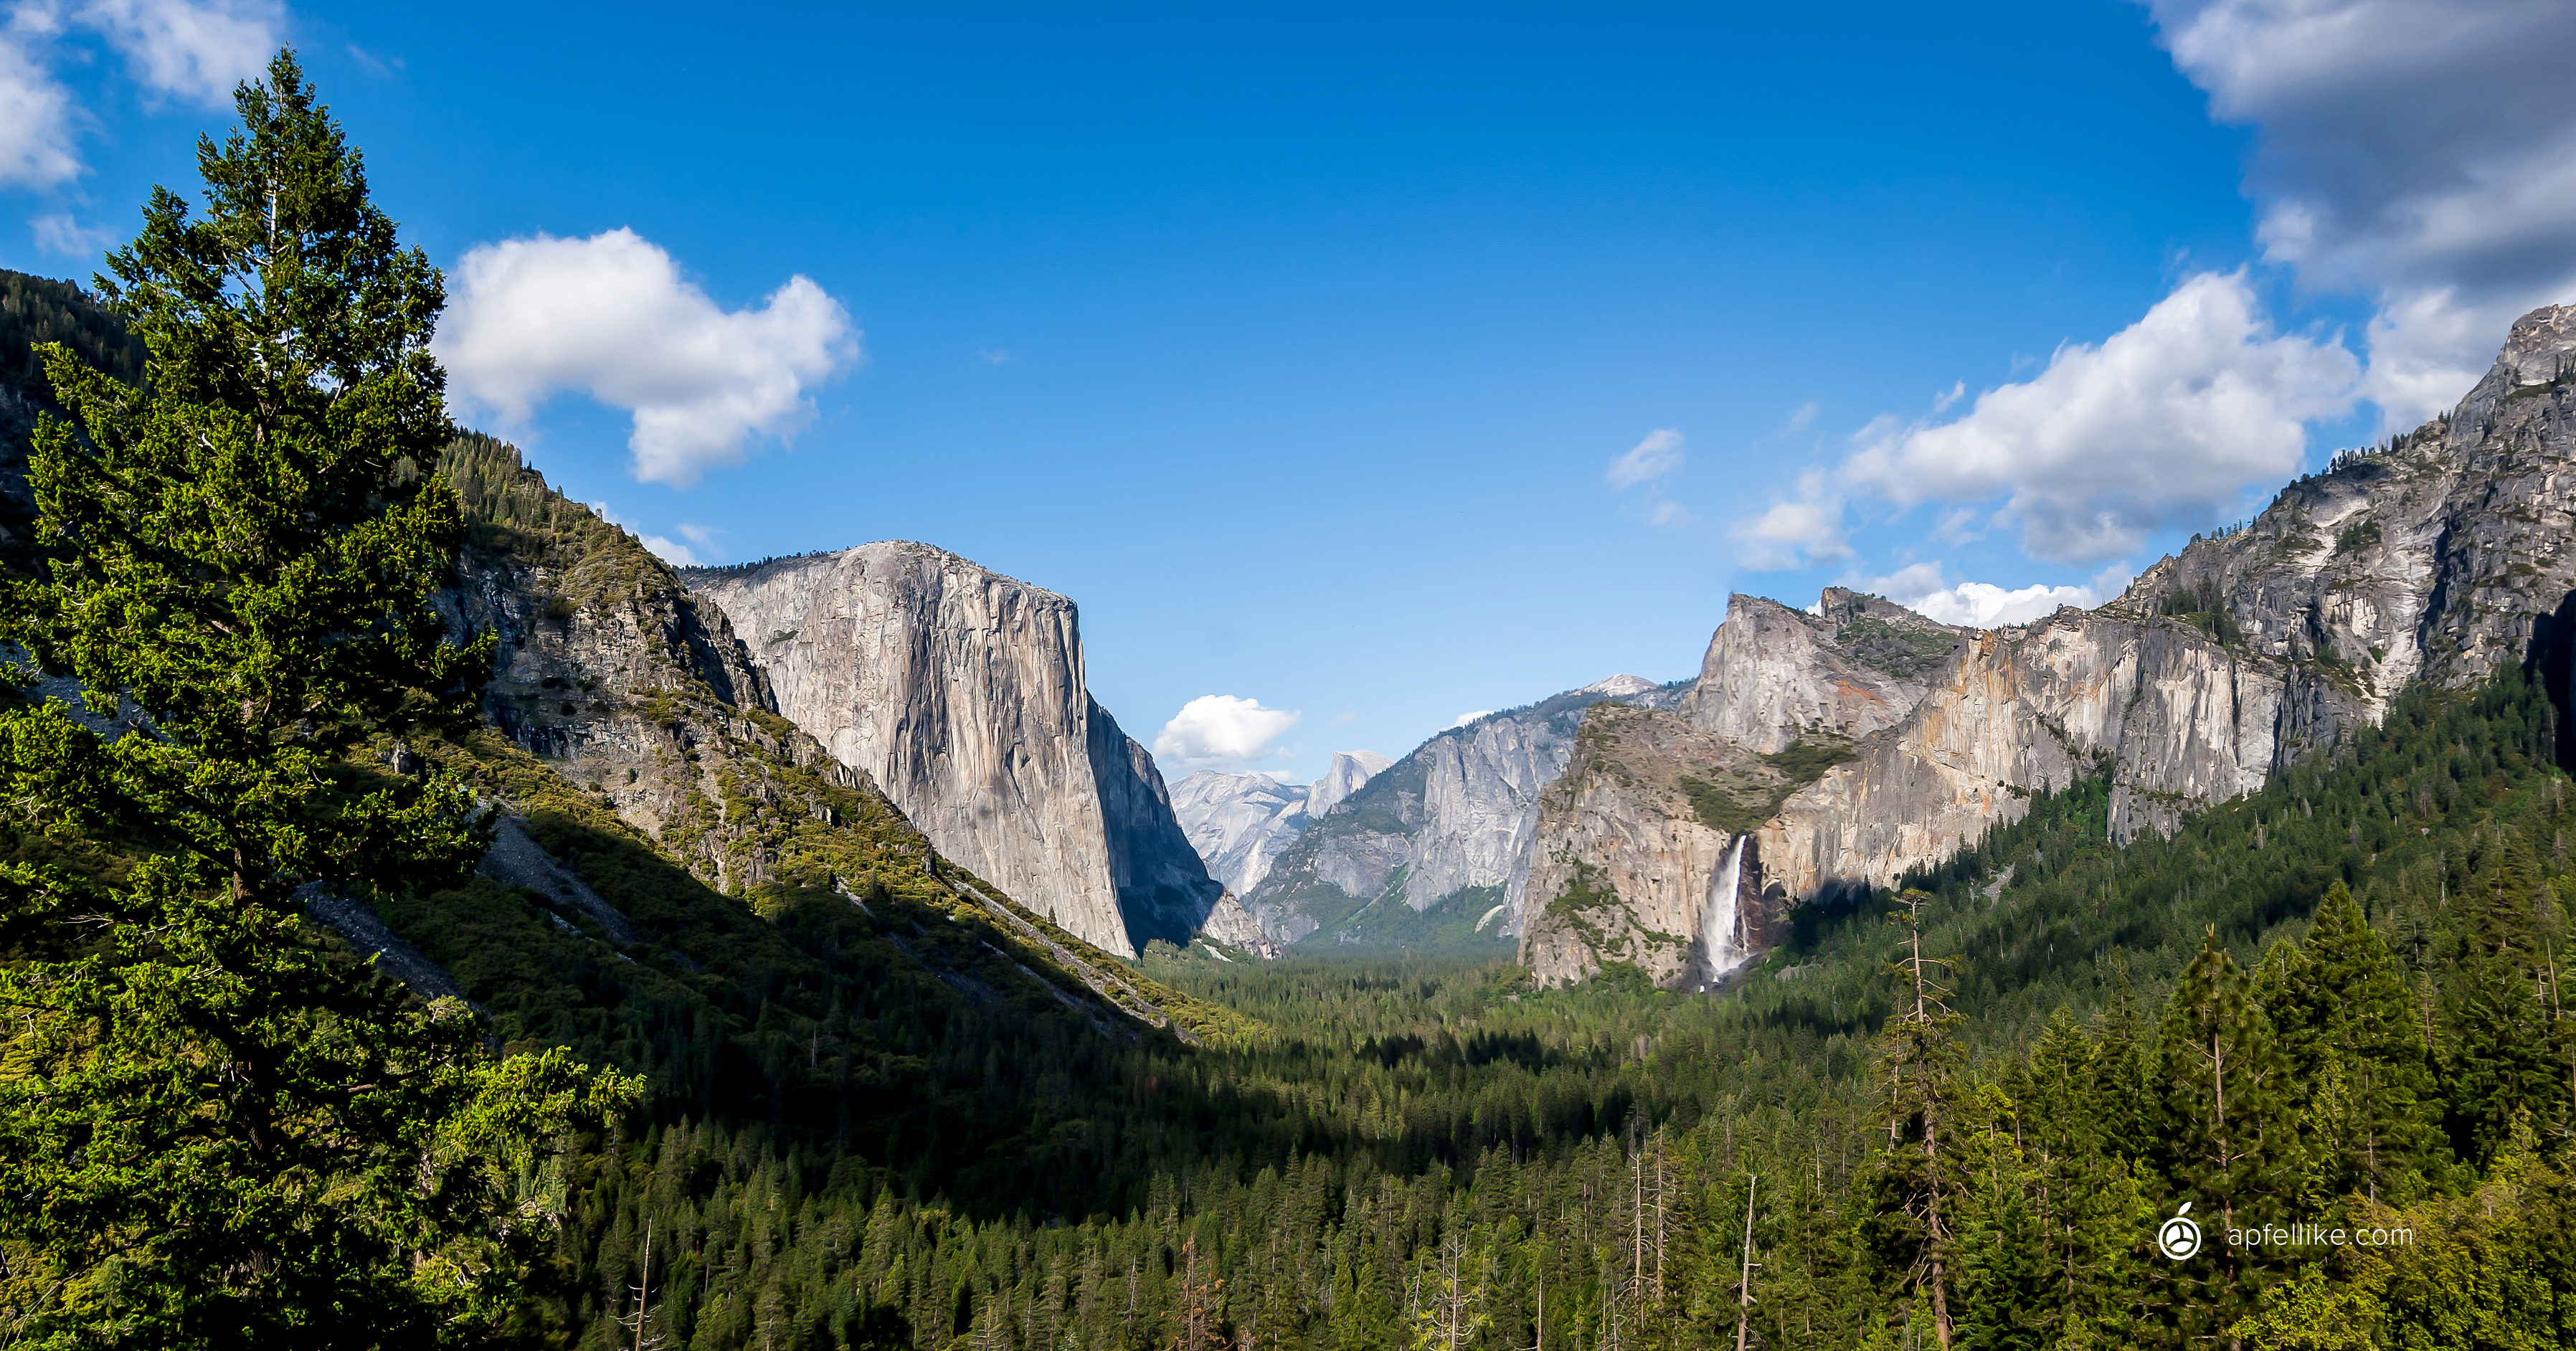 Mac Os X Yosemite Wallpaper Schreibtisch Background